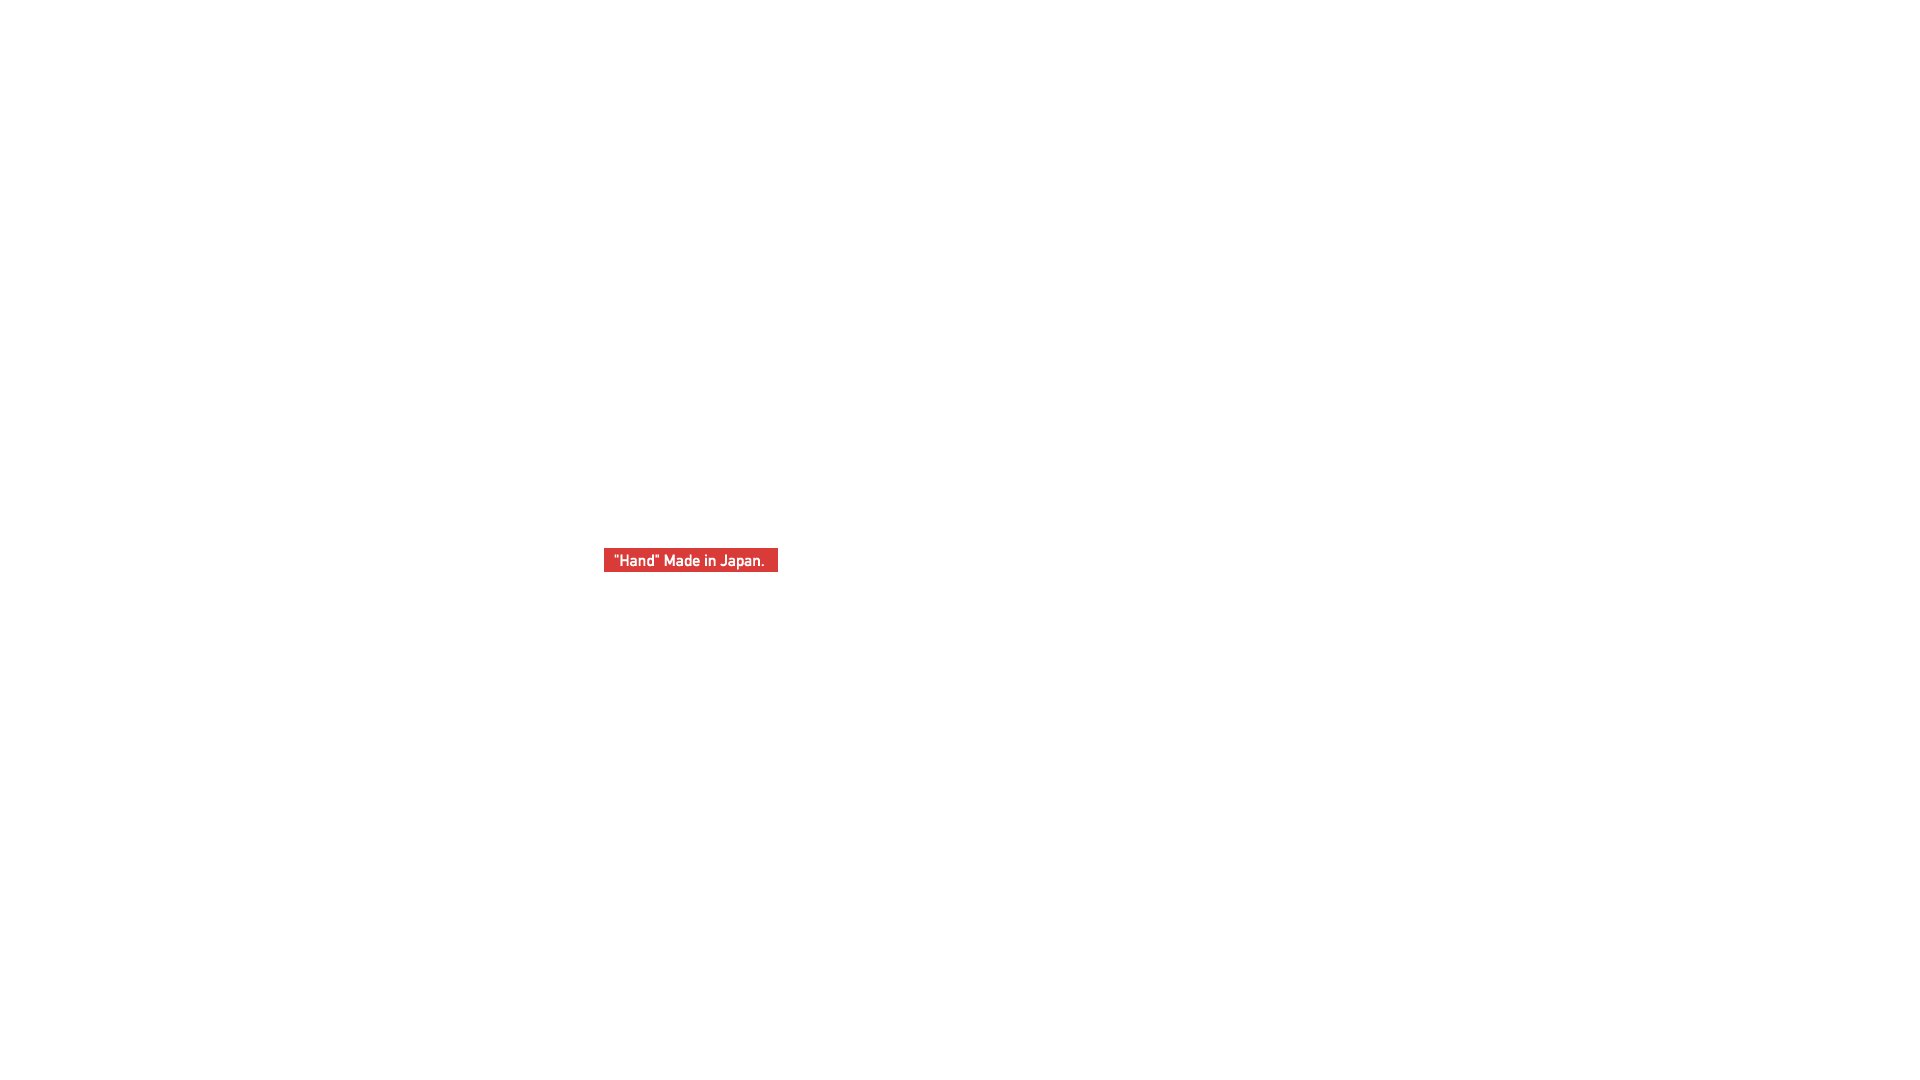 Mission Praise(ミッションプライズ)は、快適性×デザイン性を追求した国産で手作りの高機能ッ製着座用パッドです。1点1点丹誠こめてつくります。 Hand Maid in Japan.